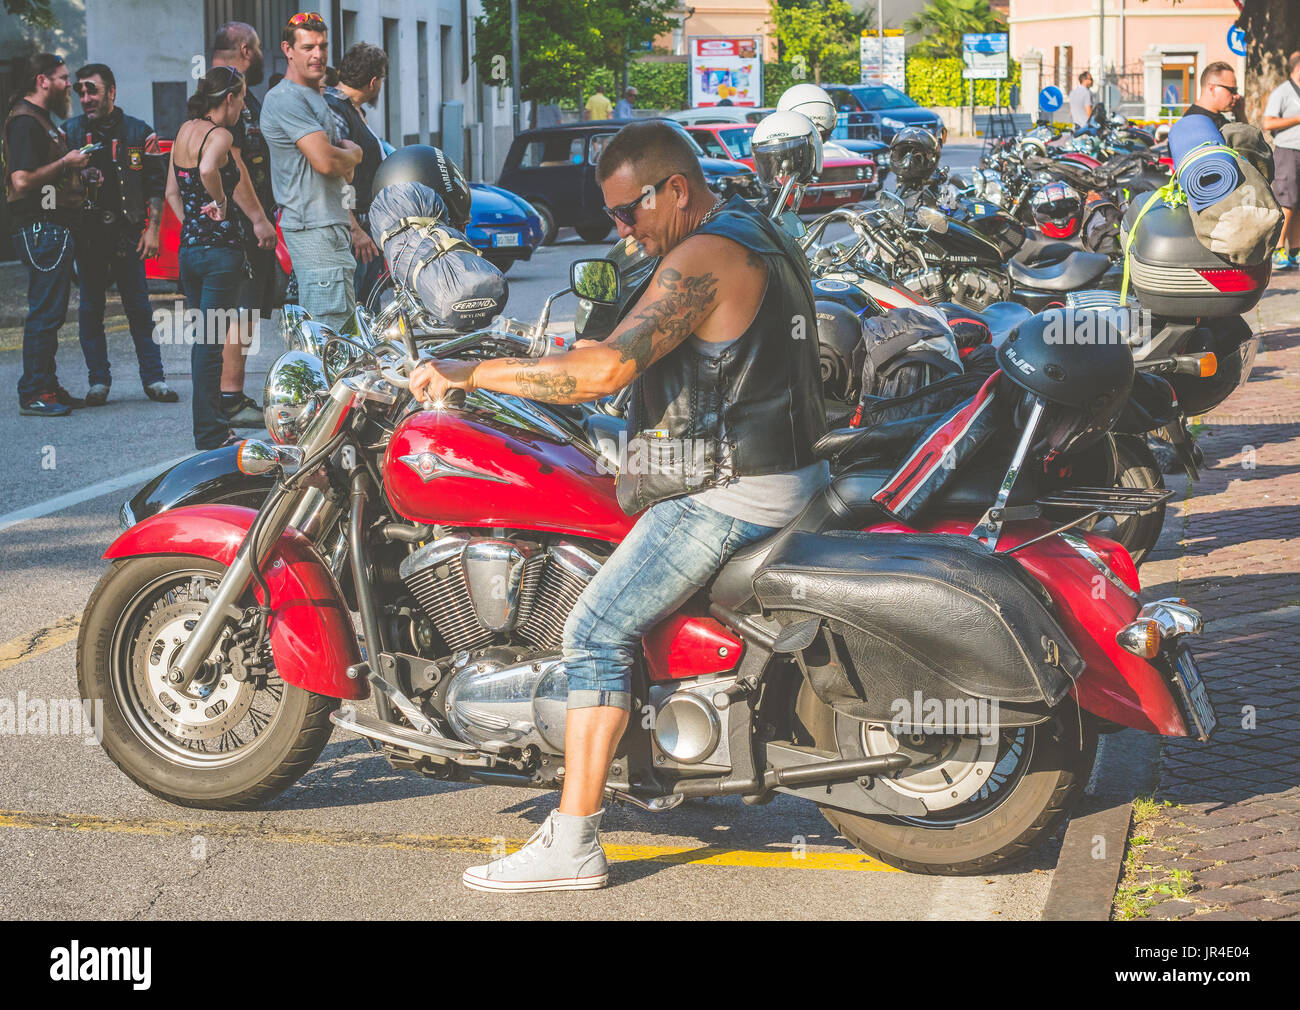 Trento, 22 Luglio 2017: Motociclista sulla moto durante la riunione. Effetto vintage. Foto Stock